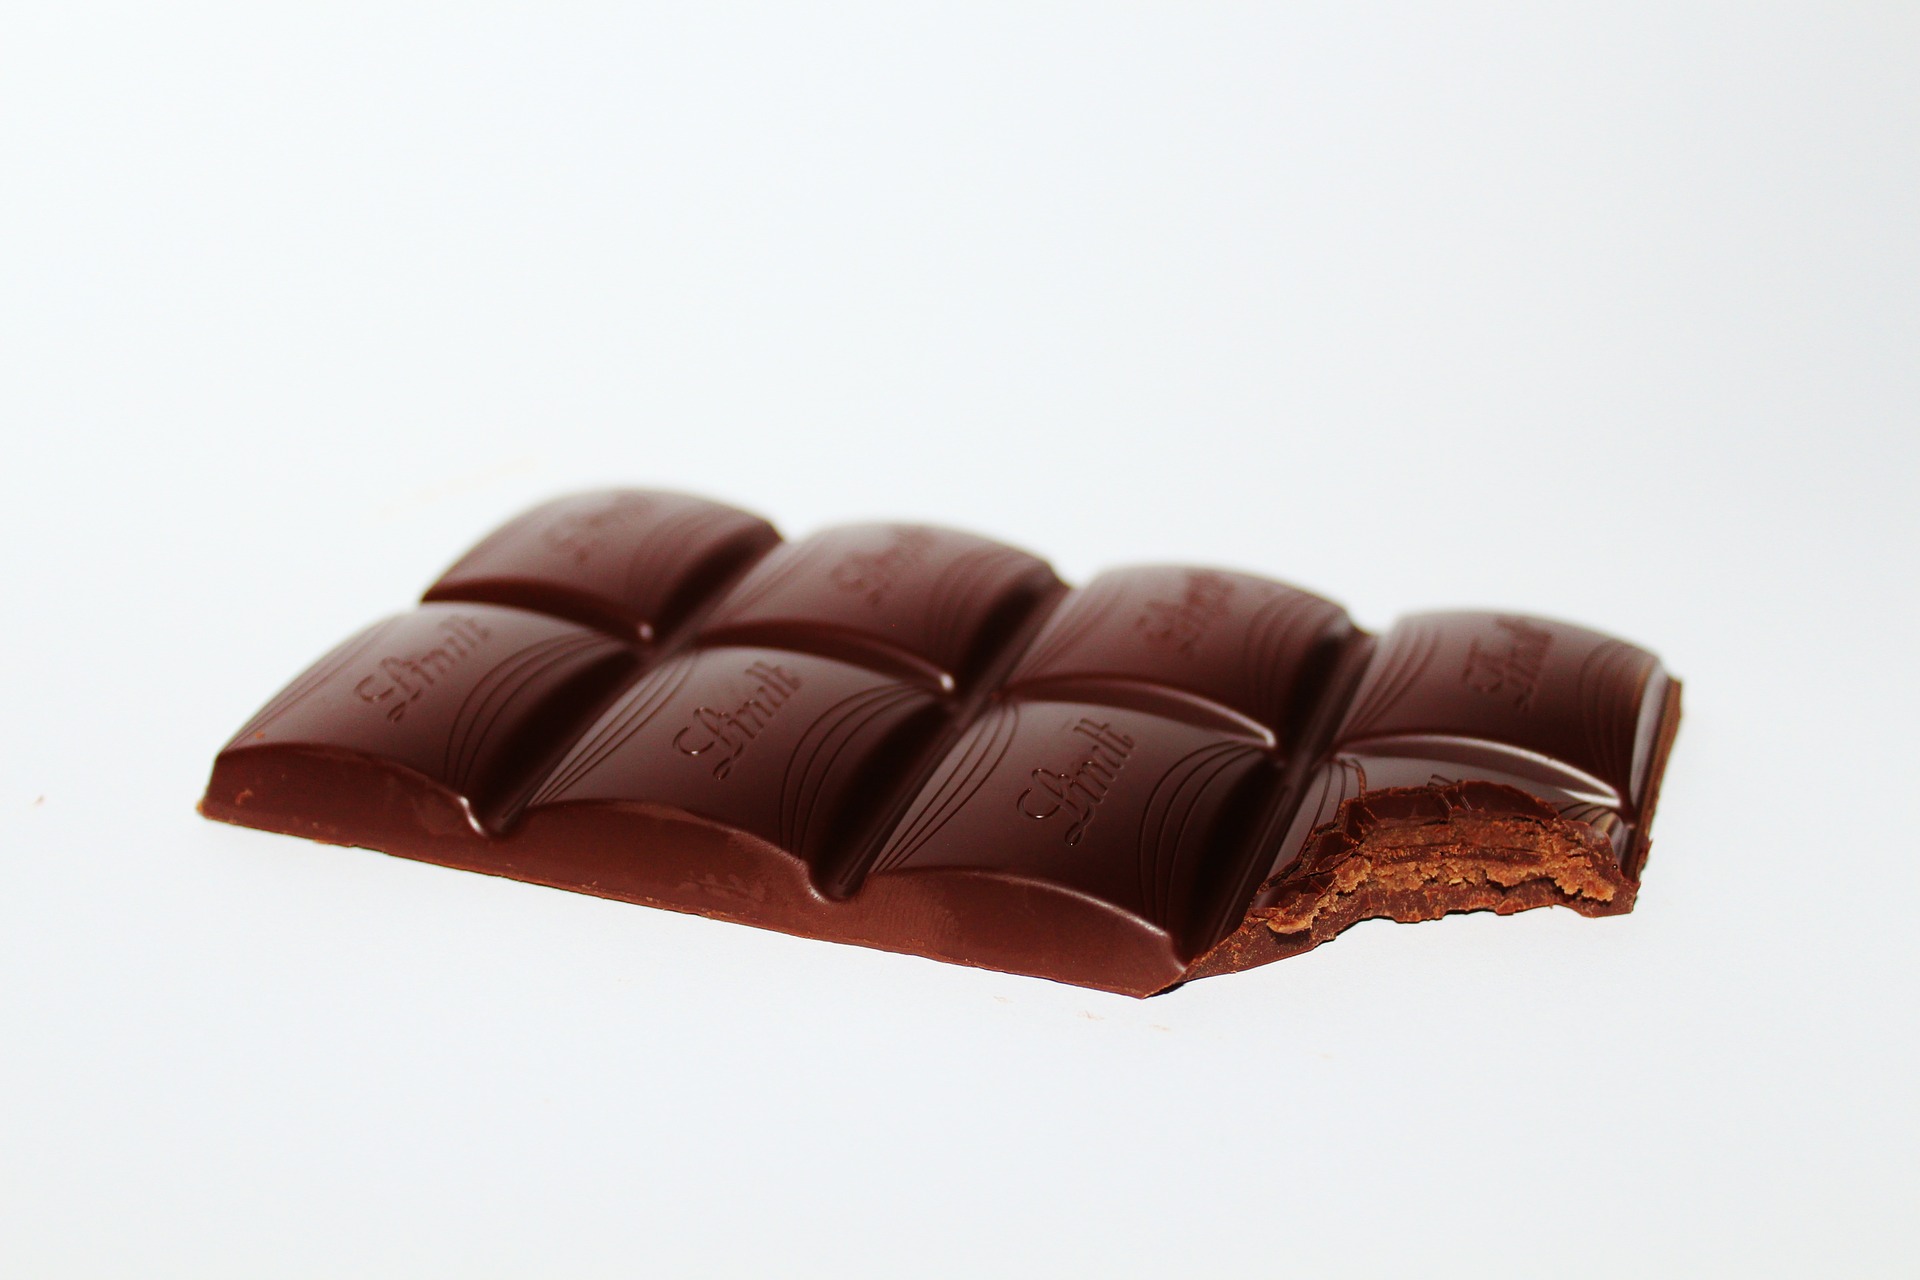 العلماء يكشفون عن فائدة جديدة للشوكولاته الداكنة